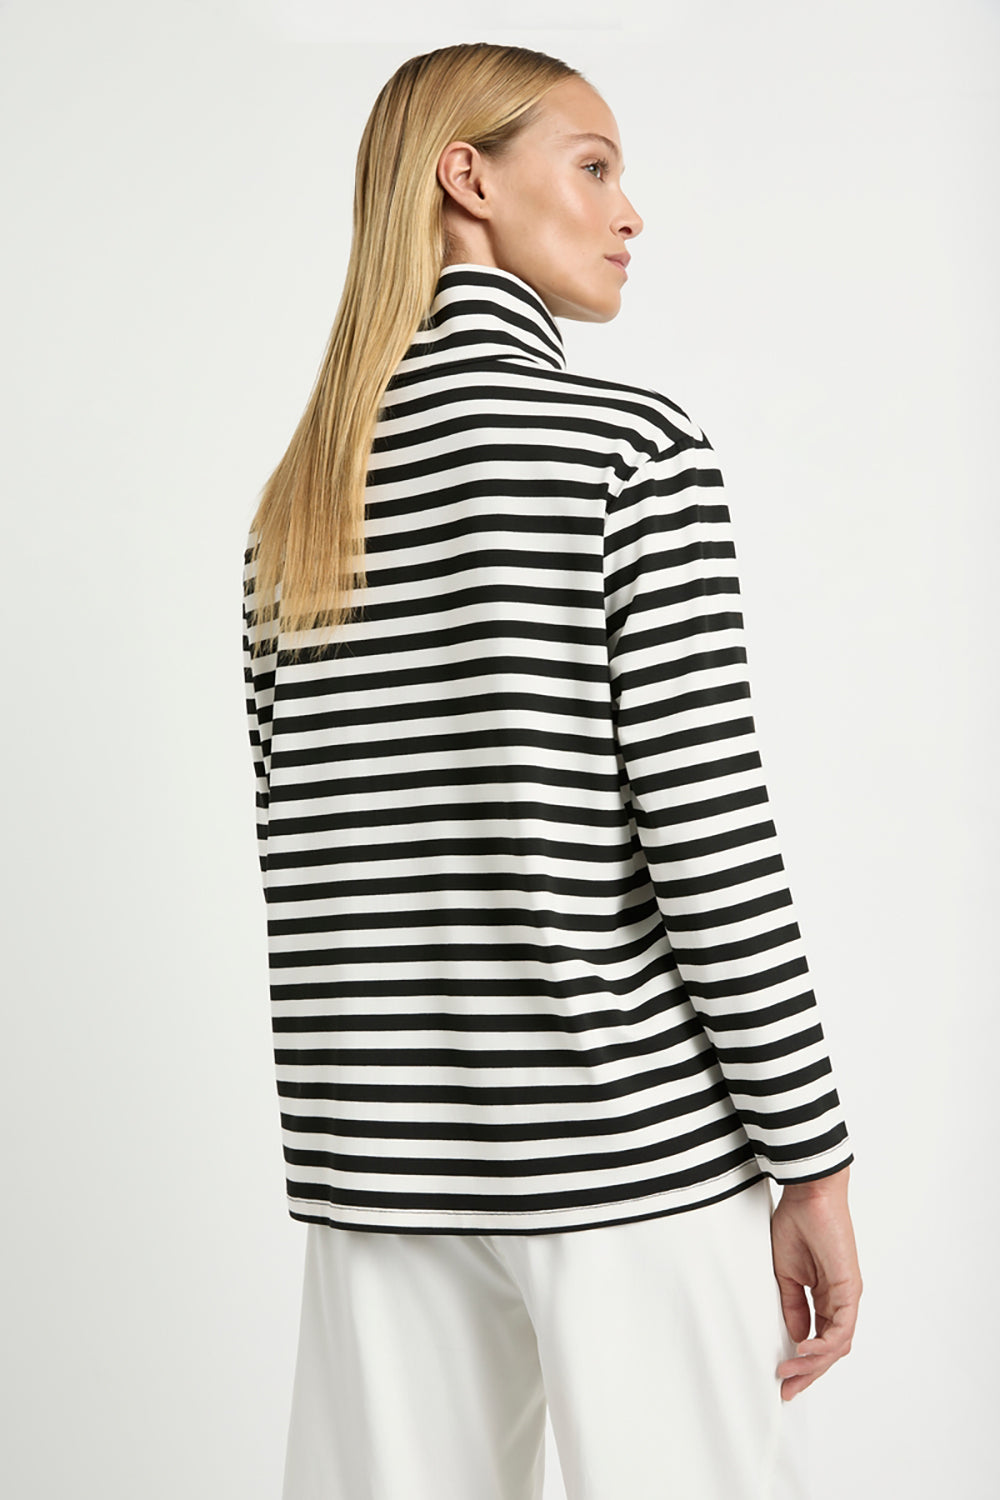 Mela Purdie Half Zip Sweater in Beval Stripe Milk/Black F530 8259